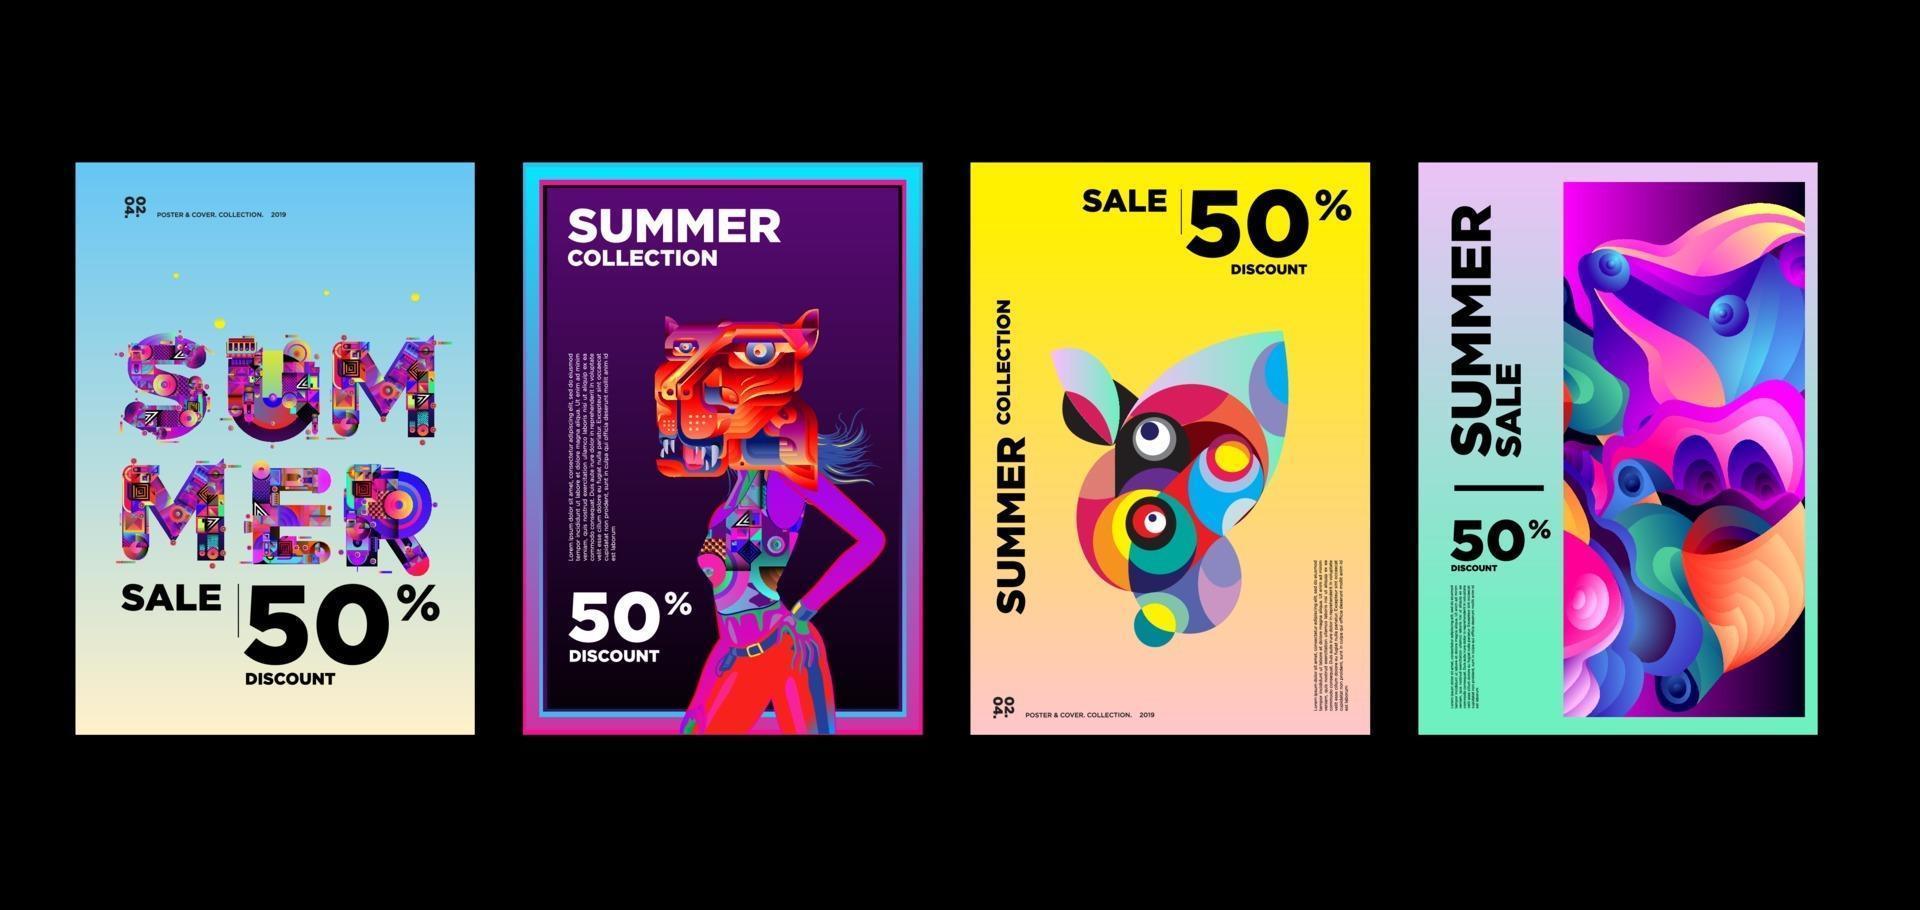 Plantilla de banner de promoción de descuento de venta de música y moda de verano vector